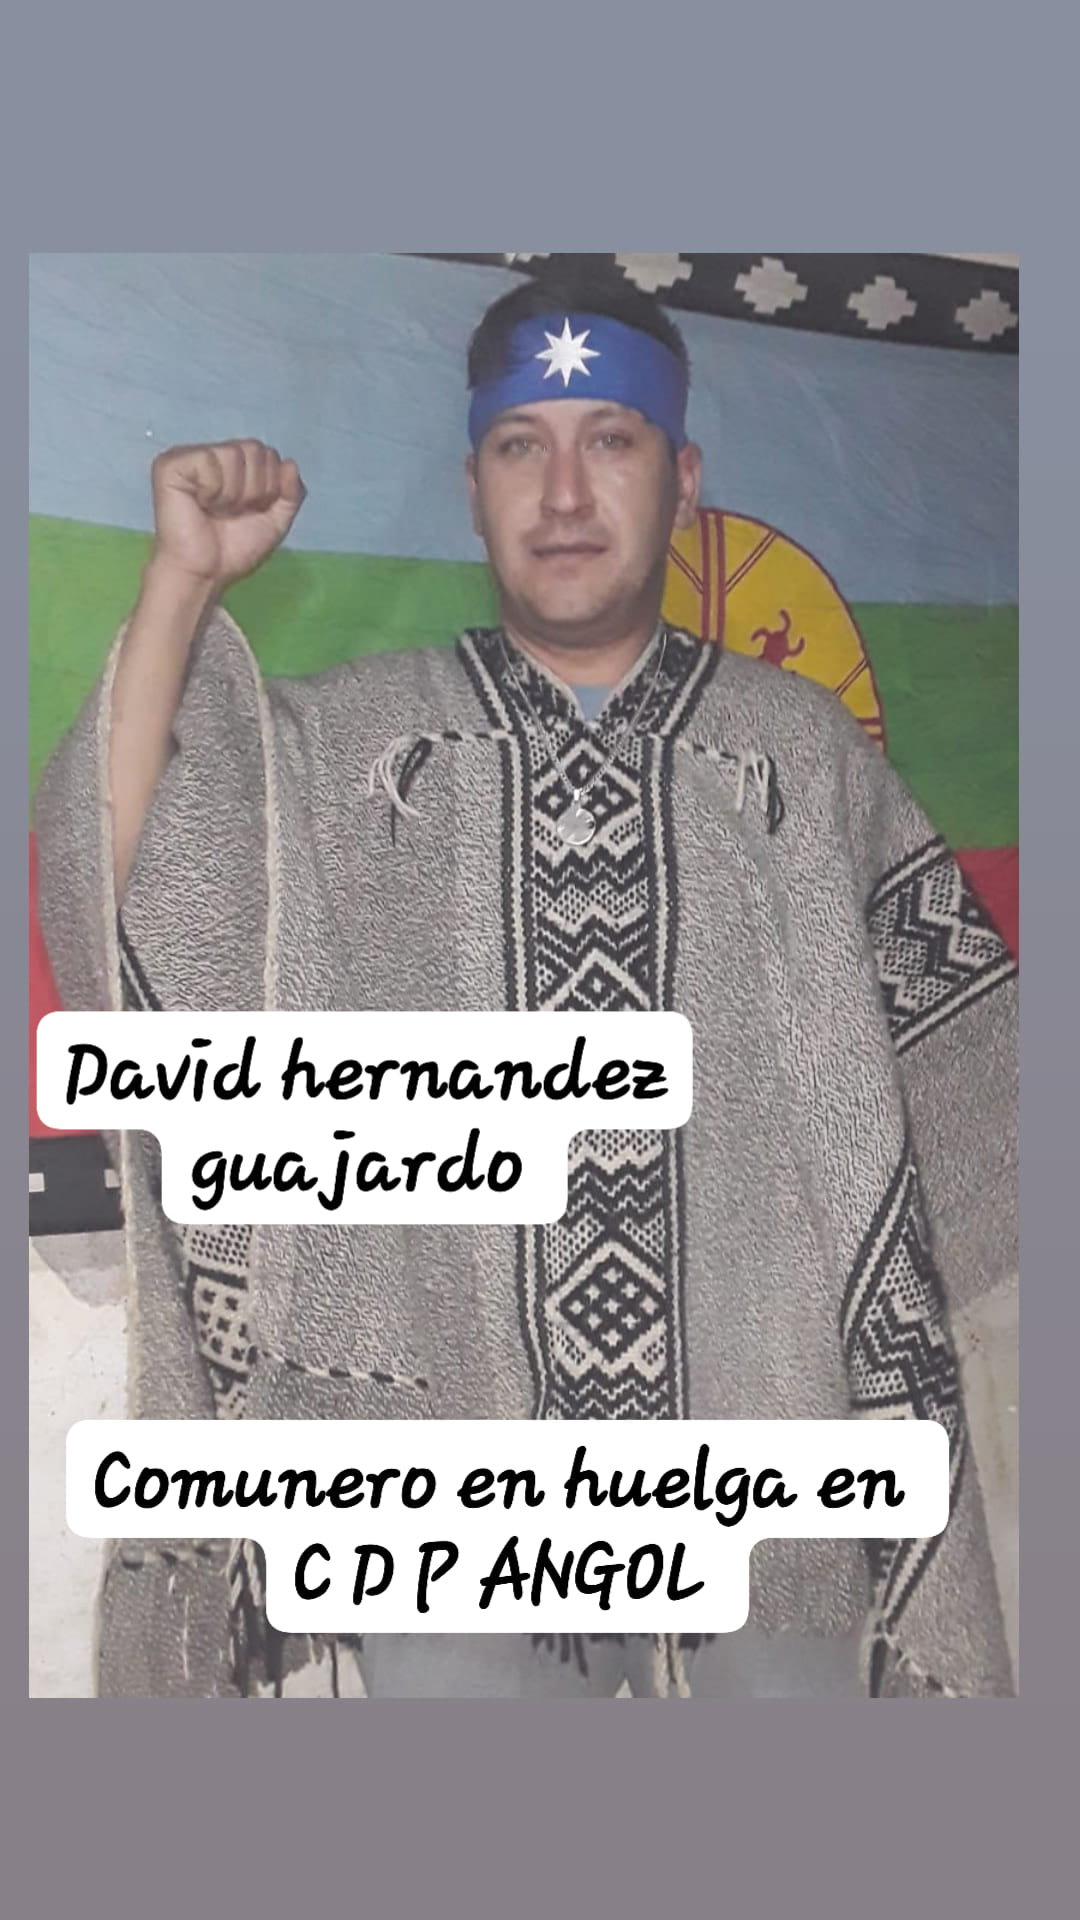 Puede ser una imagen de 1 persona, de pie y texto que dice "David hernandez guajardo Comunero en huelga en CPP ANGOL"